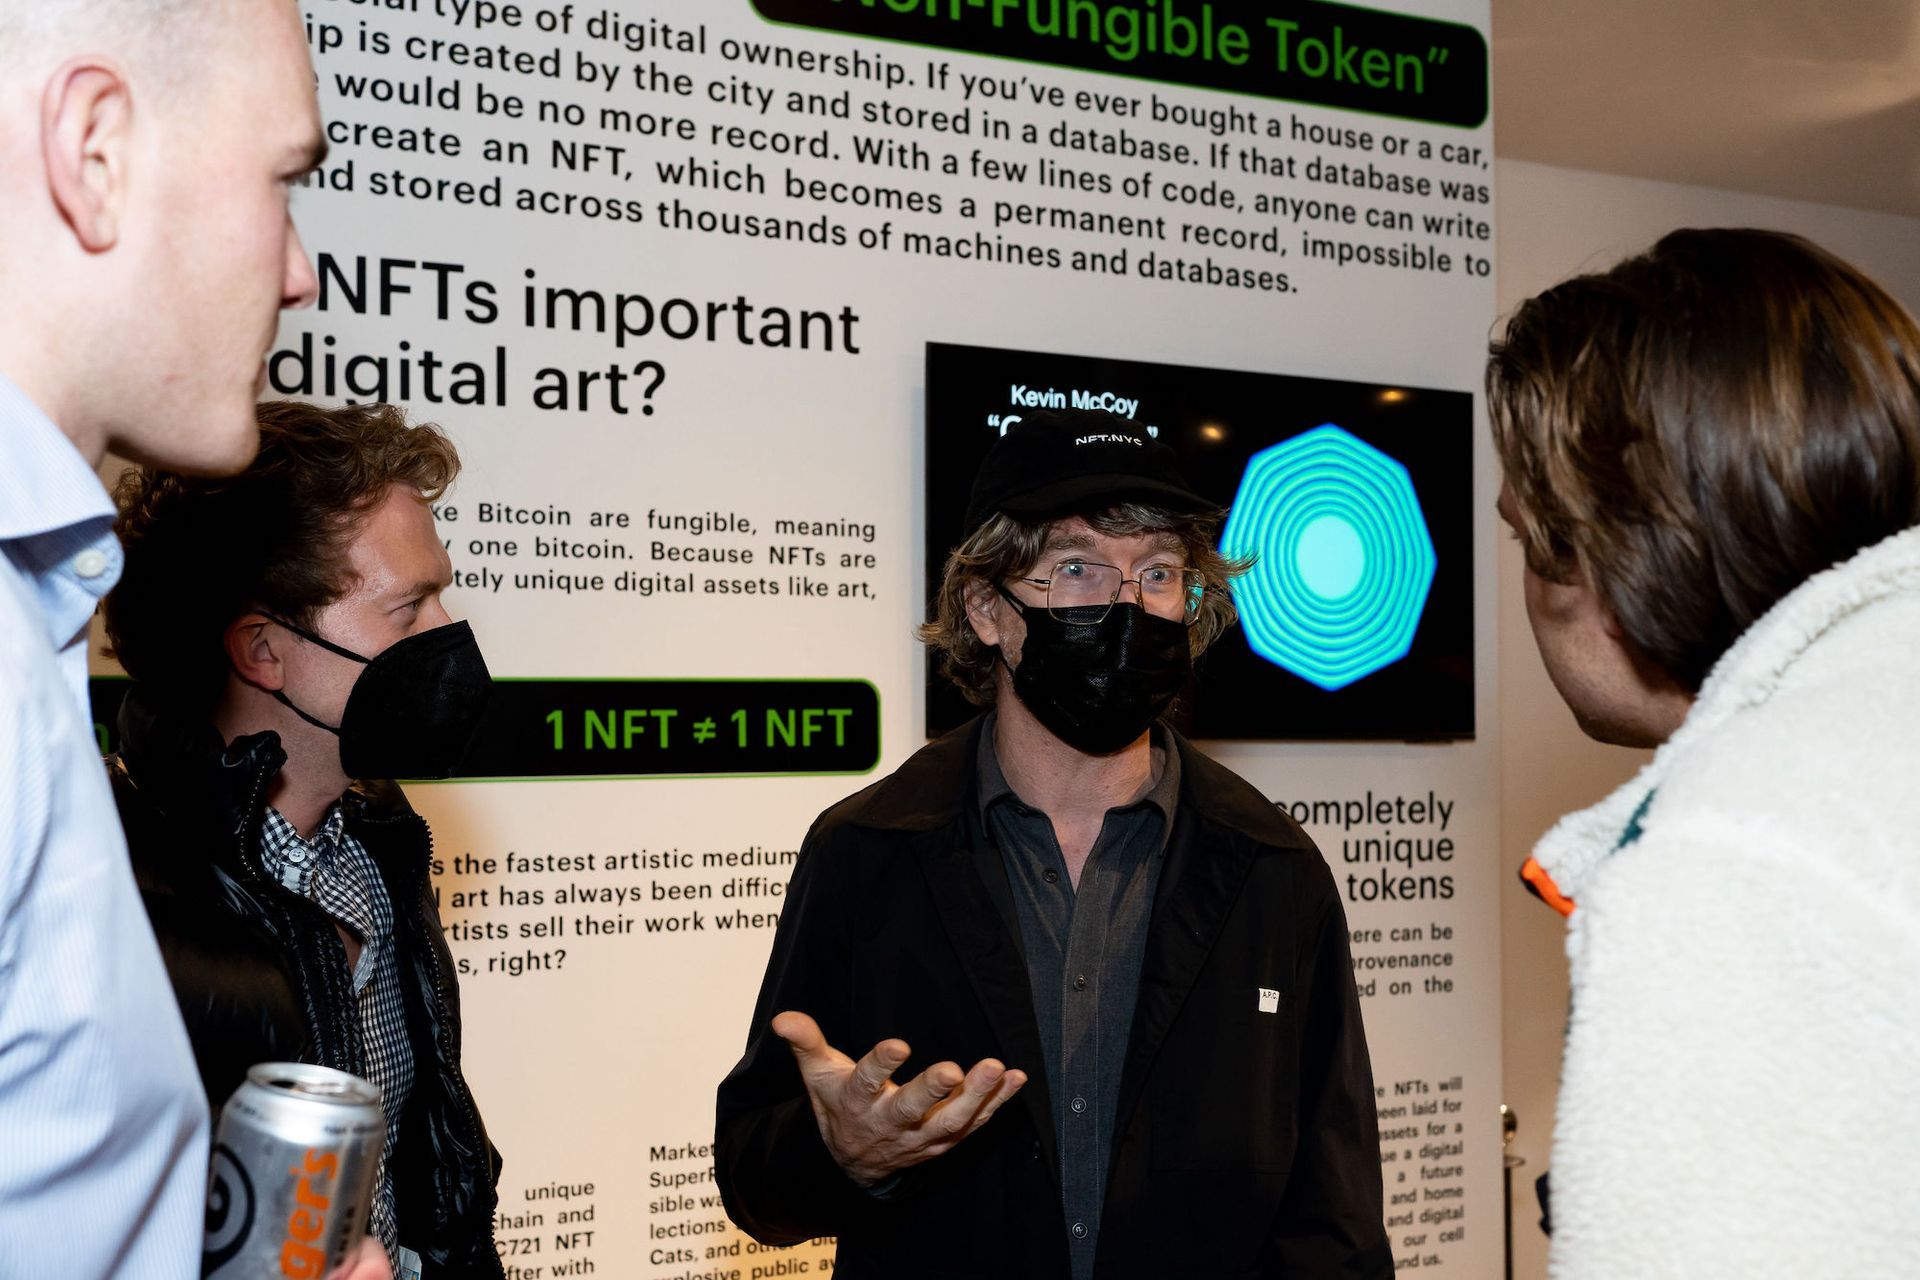 קווין מקוי, יזם של ה-NFT, מדבר בפני מבקרים במוזיאון ה-NFT של סיאטל

© nataworry Photography / מוזיאון NFT של סיאטל